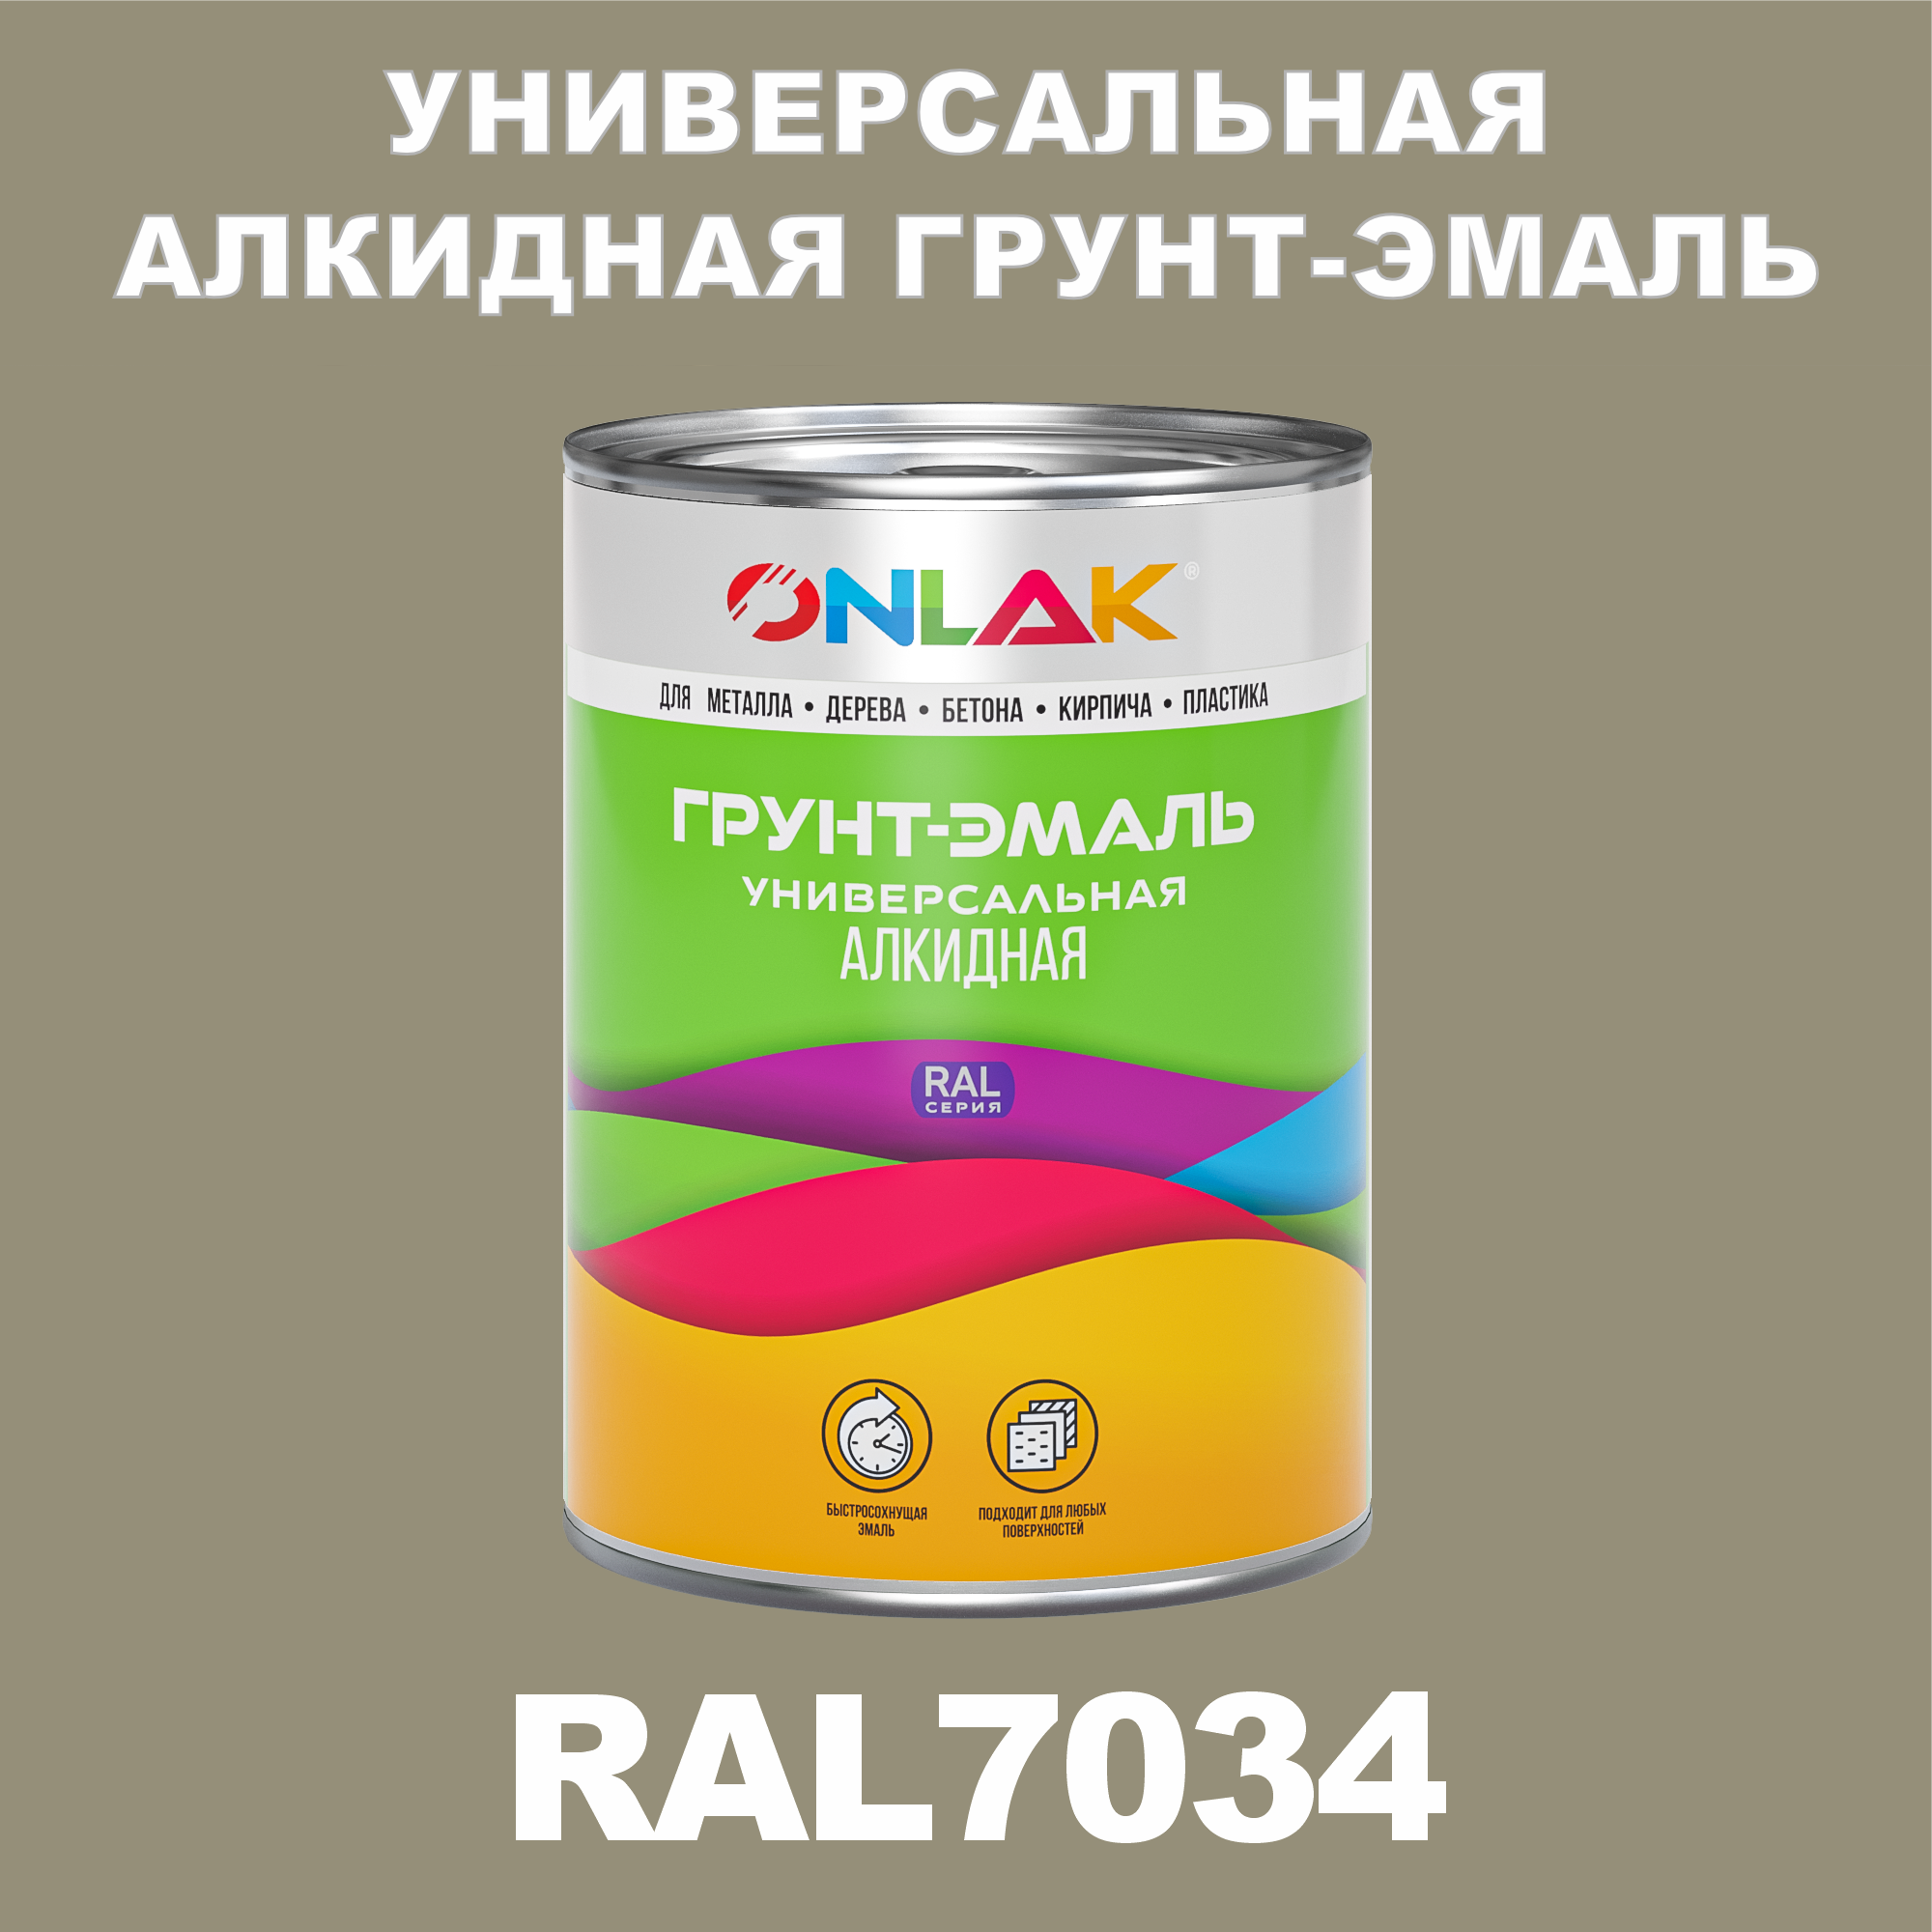 Грунт-эмаль ONLAK 1К RAL7034 антикоррозионная алкидная по металлу по ржавчине 1 кг грунт эмаль neomid по ржавчине быстросохнущая алкидная серая 0 9 кг